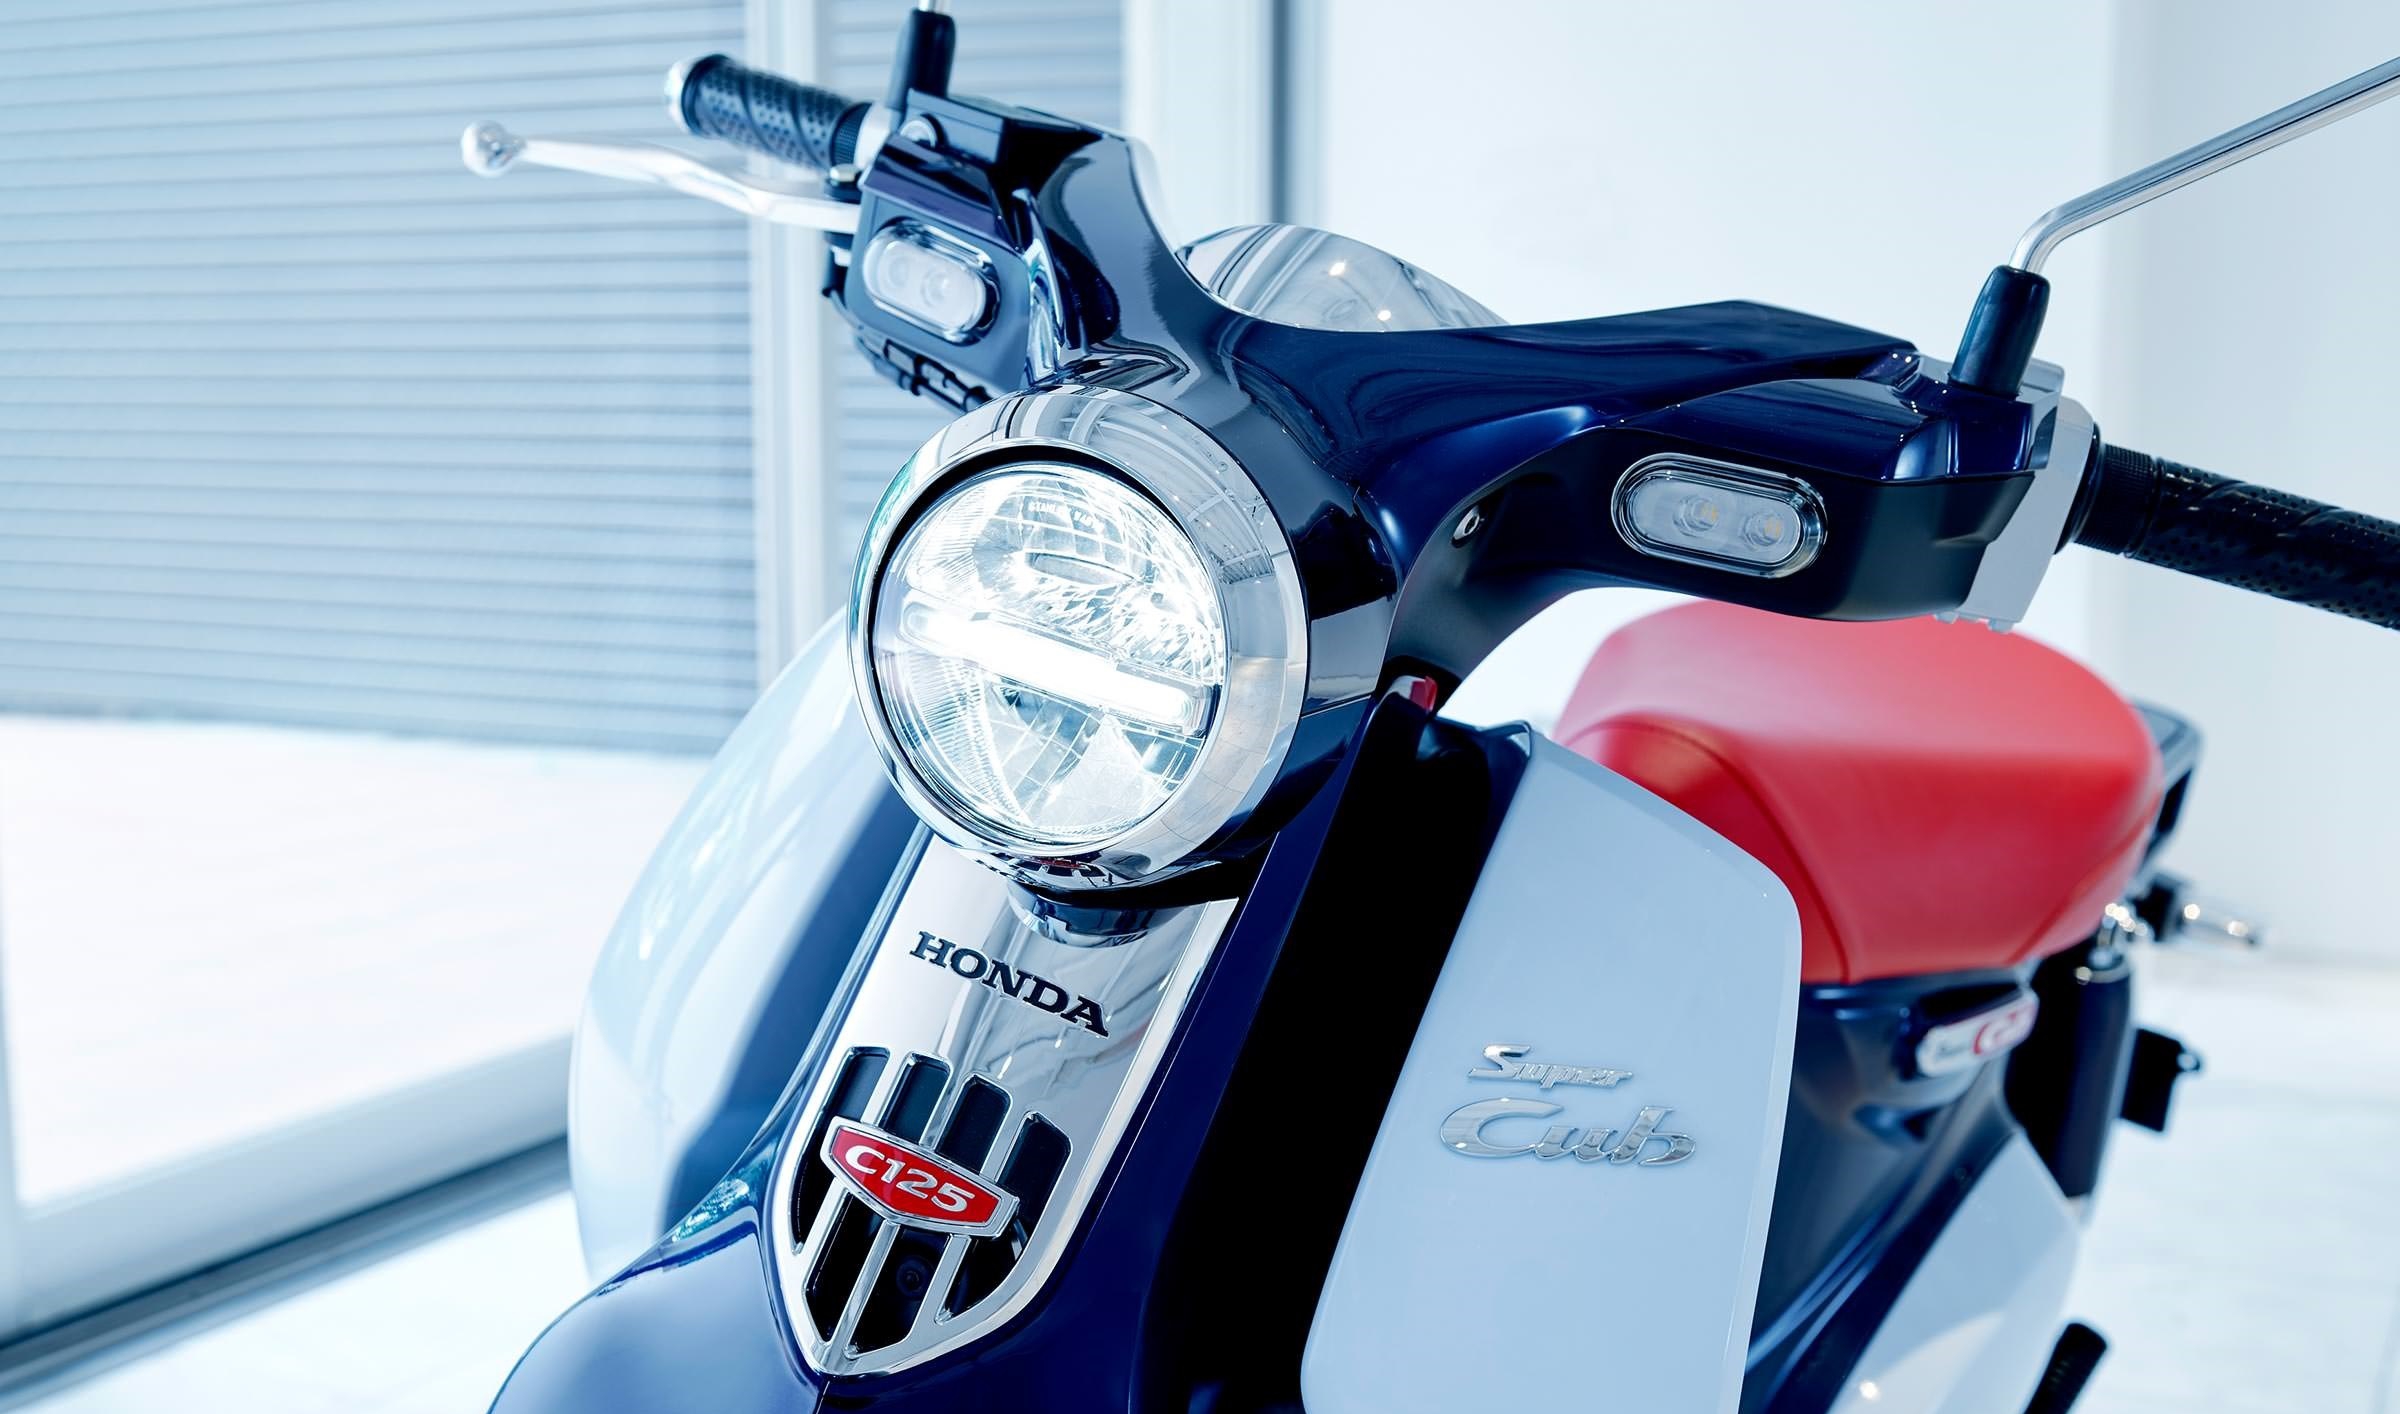 نگاهی به موتورسیکلت جدید هوندا سوپرکاب c125